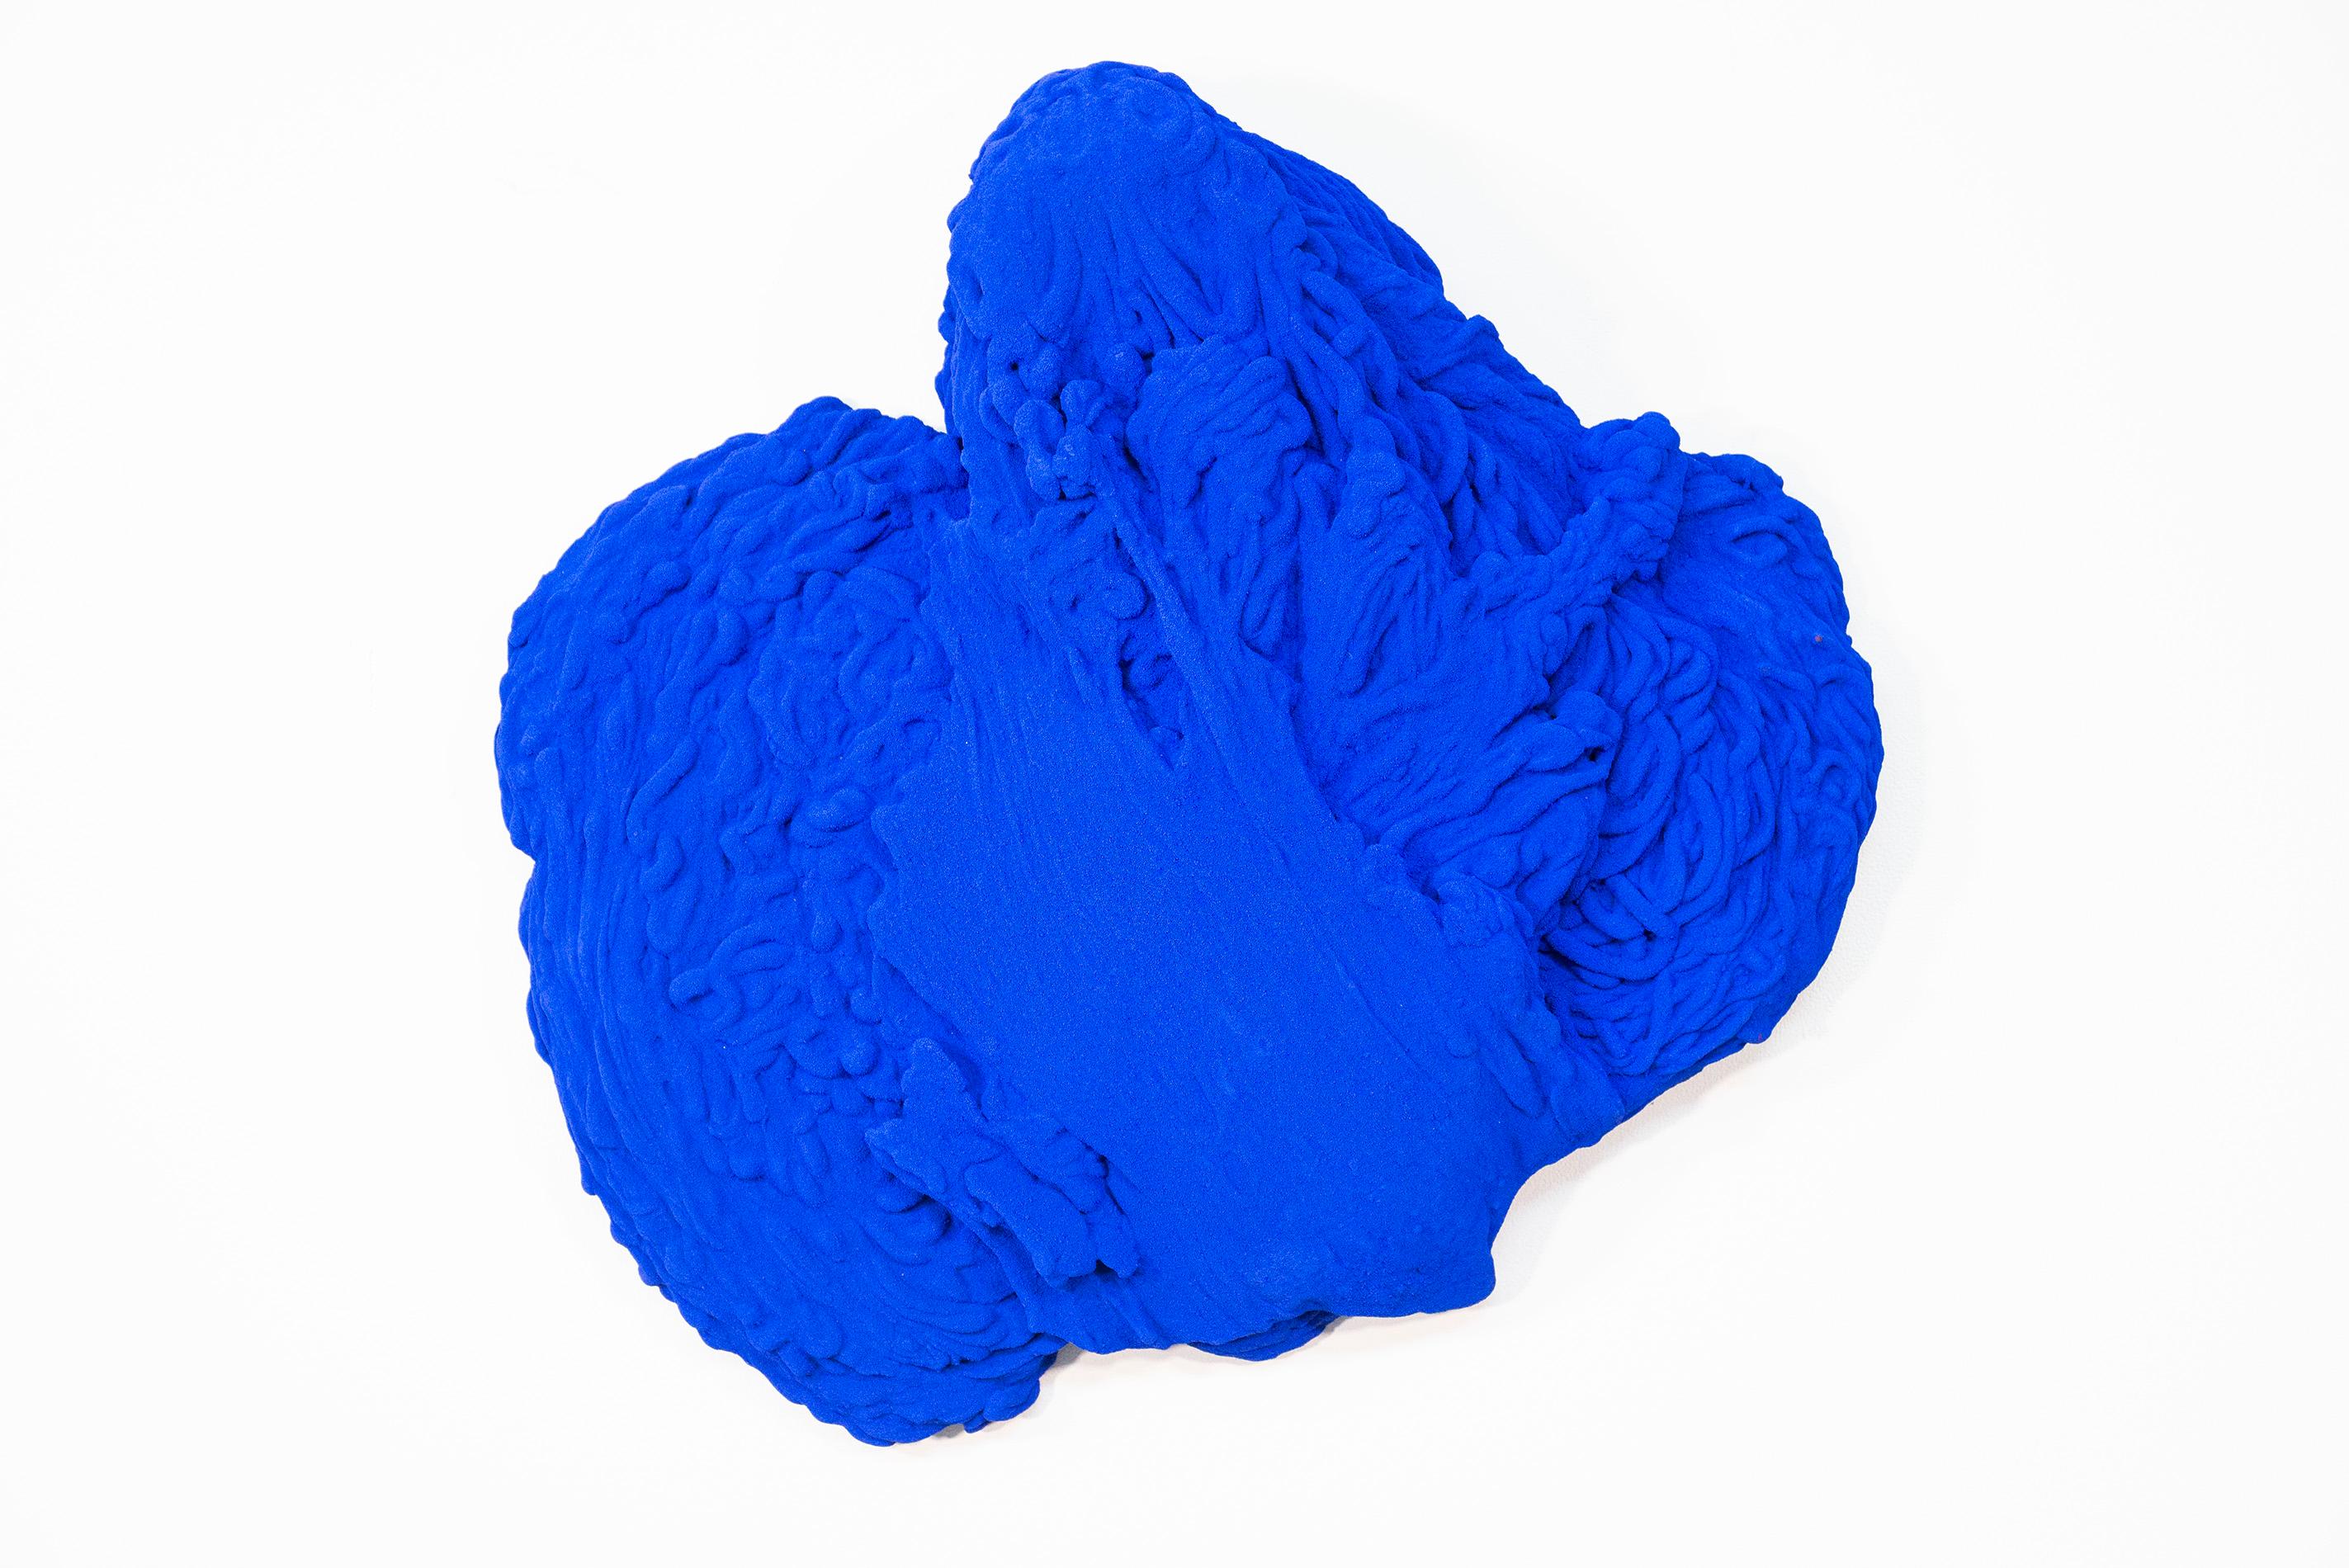 Shayne Dark Abstract Sculpture – Blau Matter 2 - matt, blau, strukturiert, abstrakt, Mischtechnik-Wandskulptur